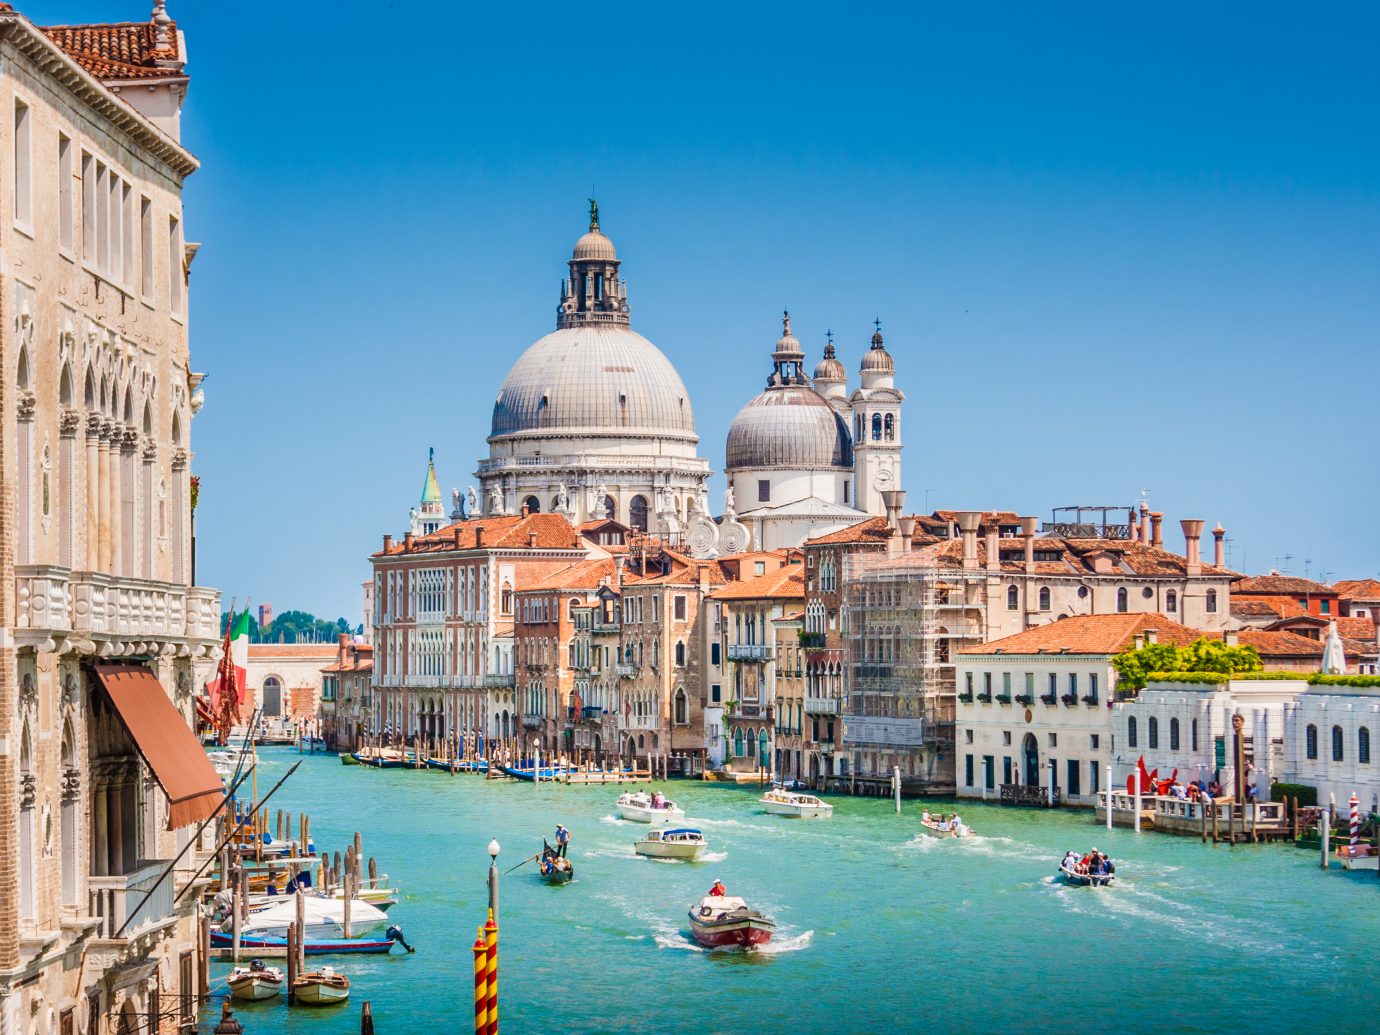 Beautiful view of famous Canal Grande with Basilica di Santa Maria della Salute, Venice, Italy.